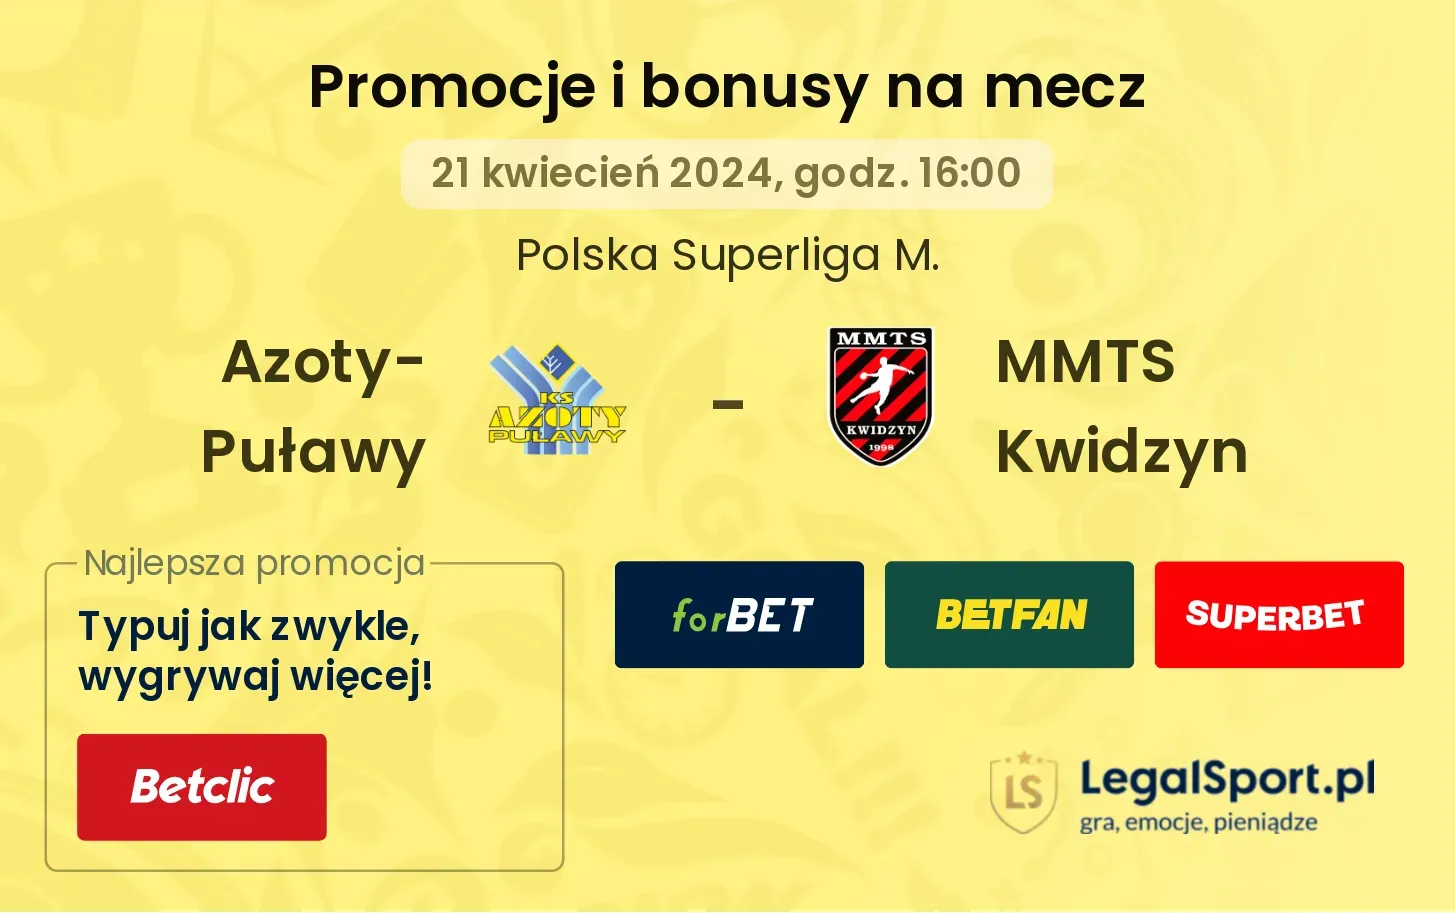 Azoty-Puławy - MMTS Kwidzyn promocje bonusy na mecz